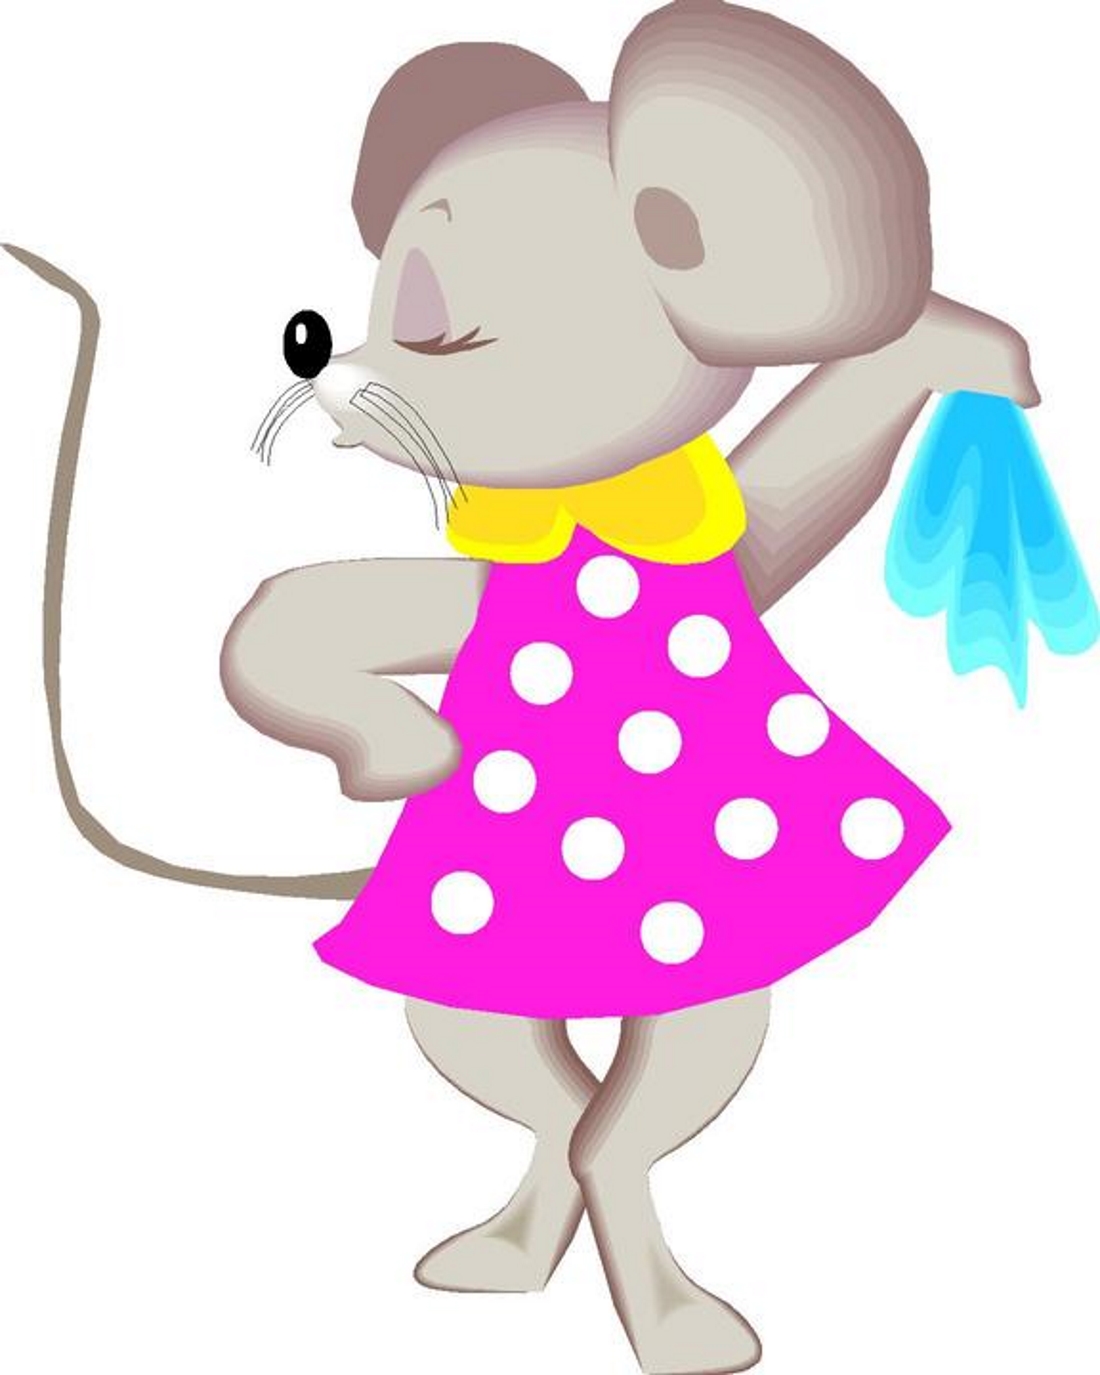 Мышка норушка картинка для детей